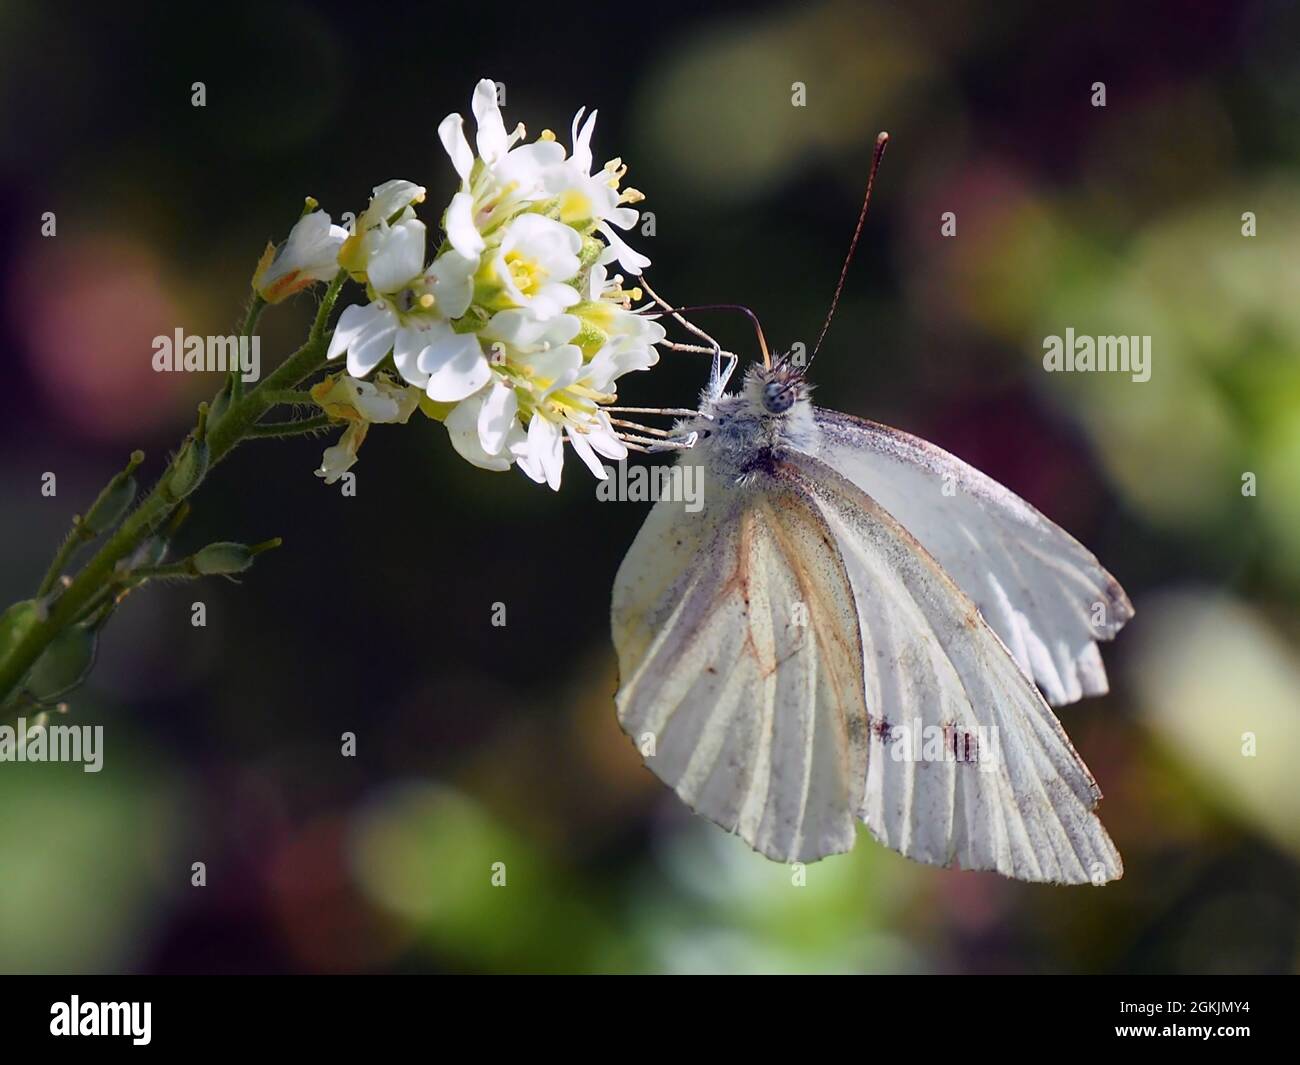 Primer plano de una mariposa blanca de col que recoge el néctar de la flor blanca en una planta de alyssum de azares con un fondo borroso. Foto de stock